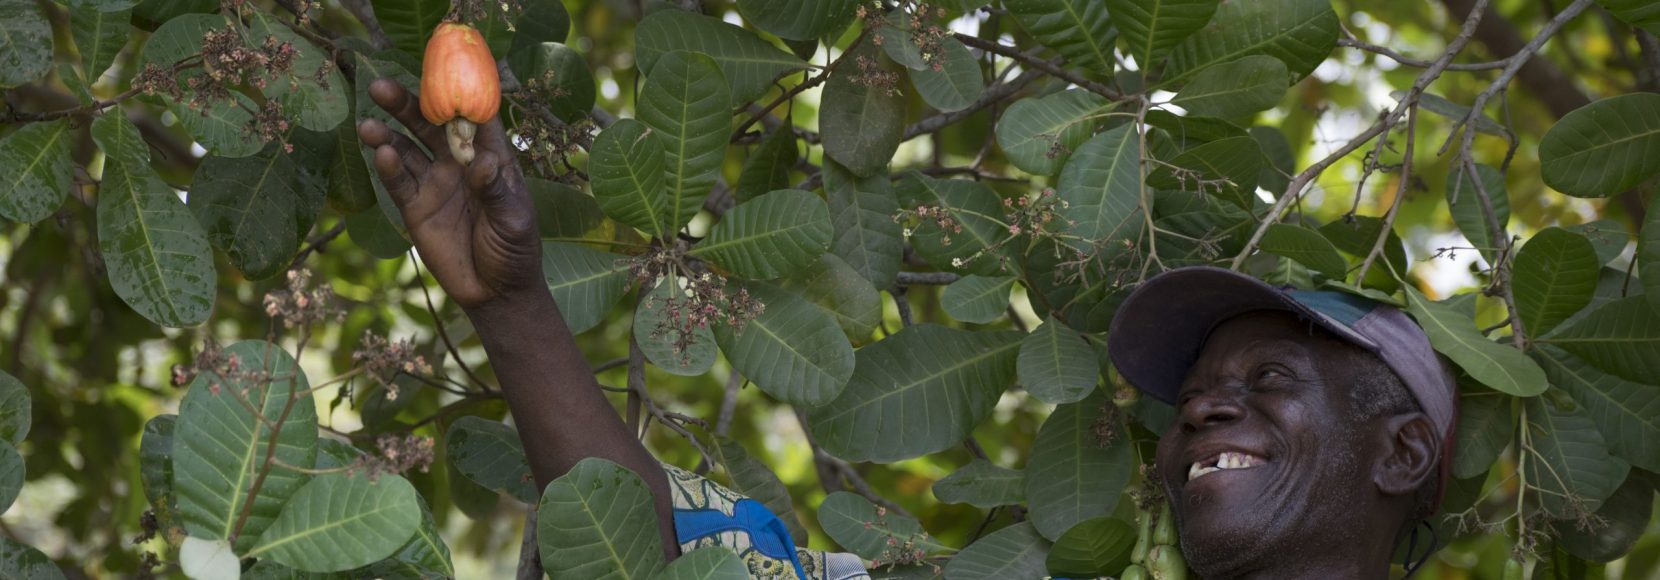 A man picks a cashew apple from a tree in Benin